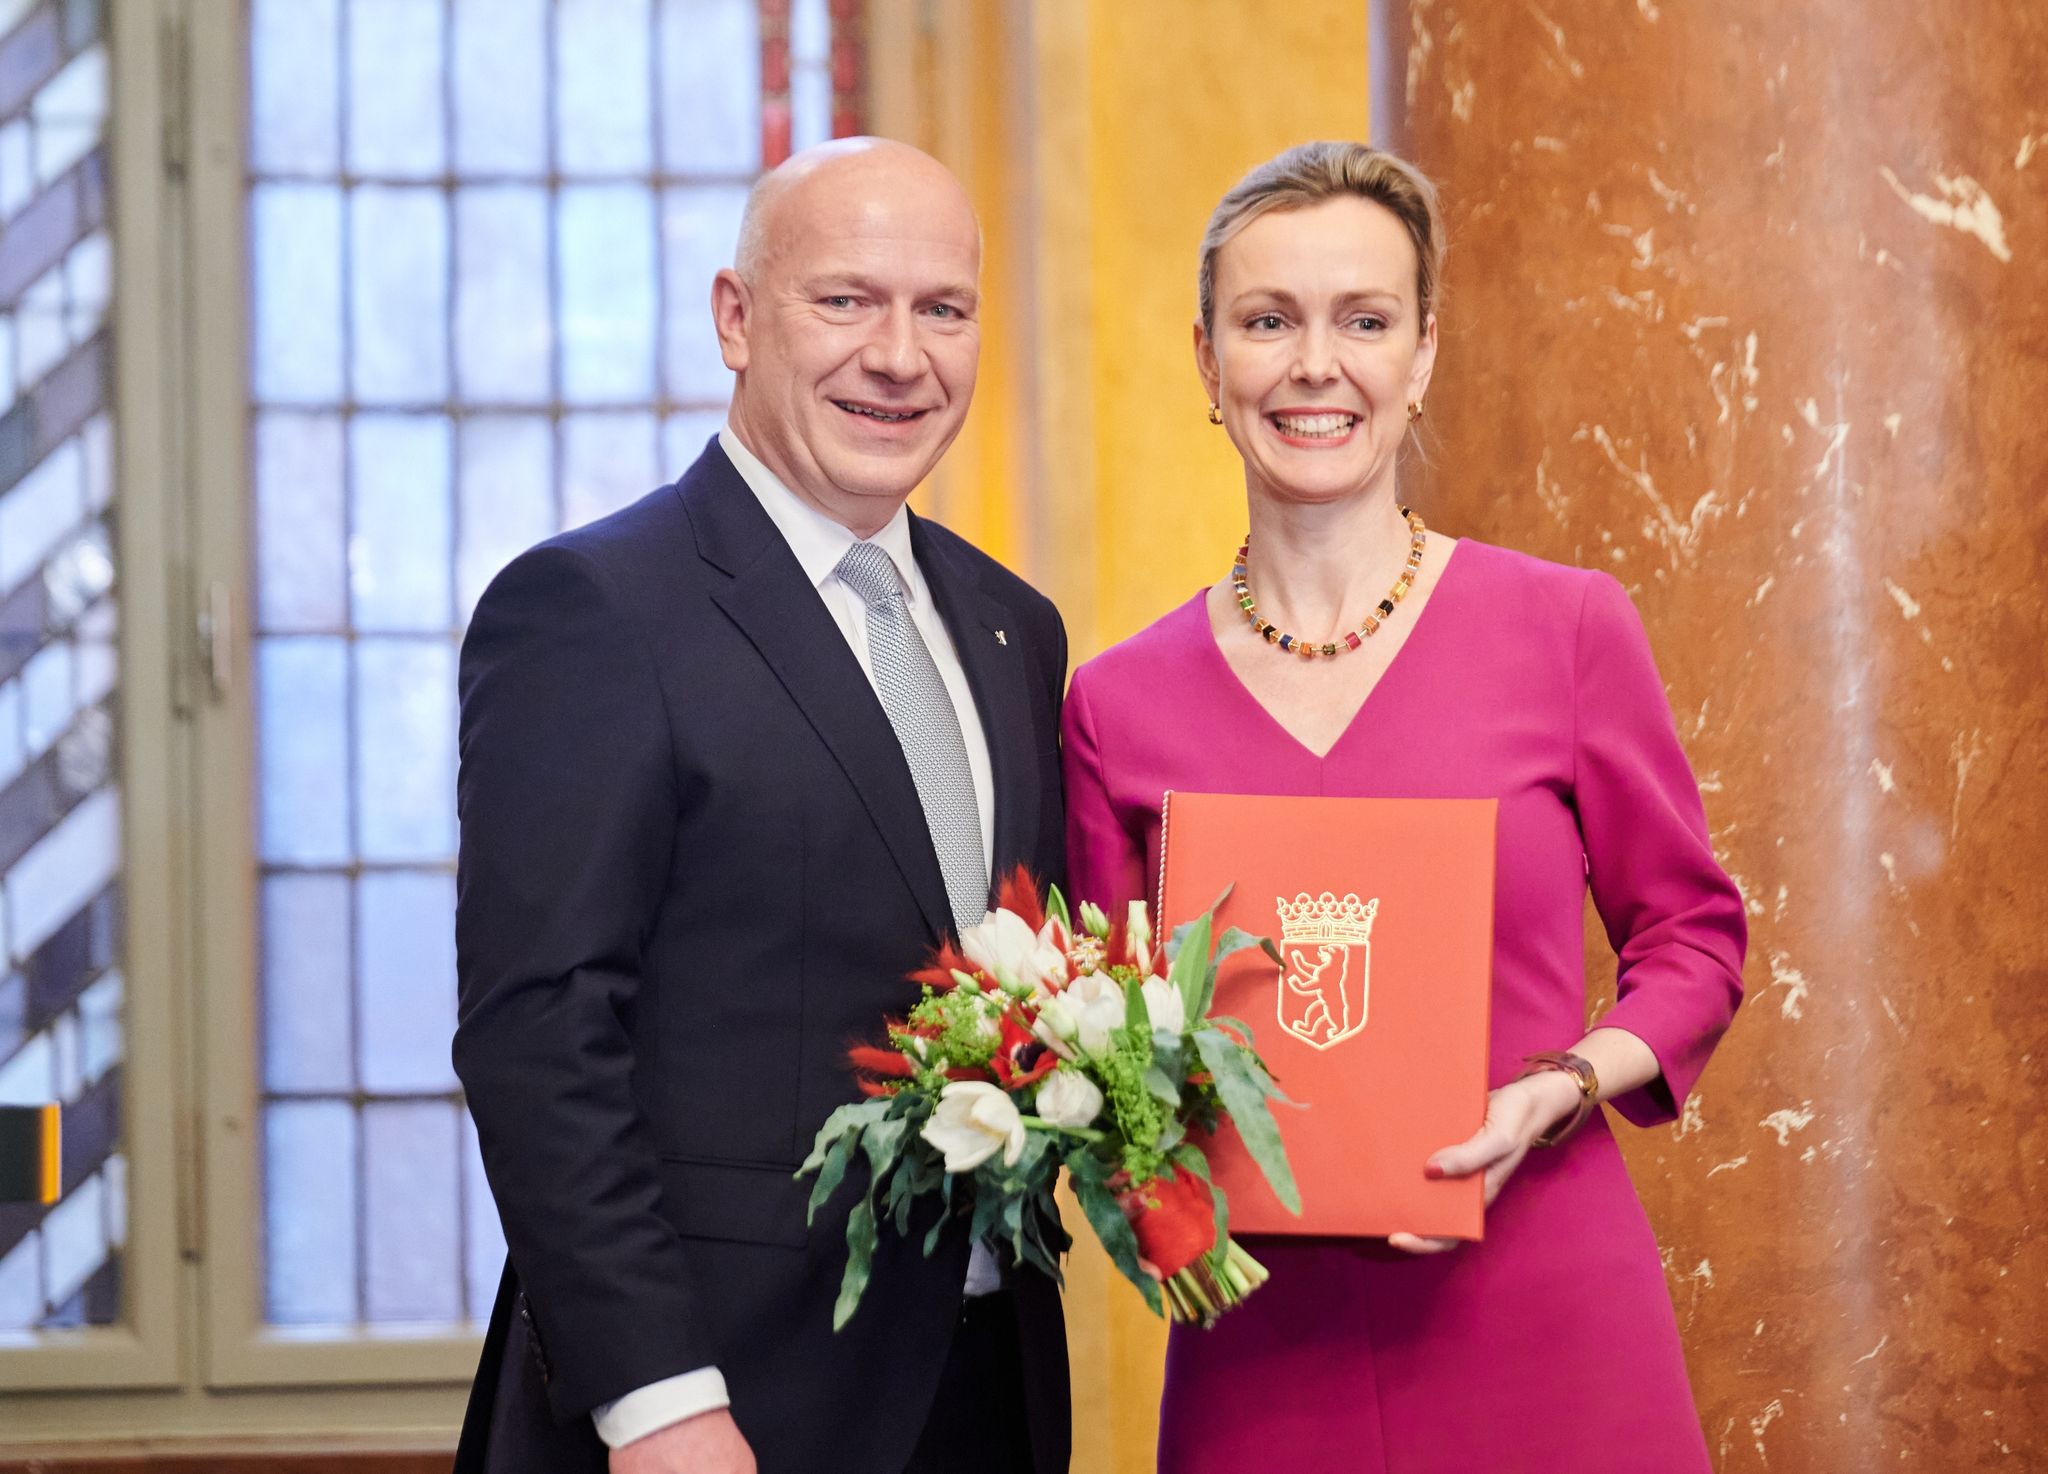 Regierender Bürgermeister von Berlin Kai Wegner (l) ernennt Manja Schreiner zur Senatorin für Verkehr, Umwelt und Klimaschutz.